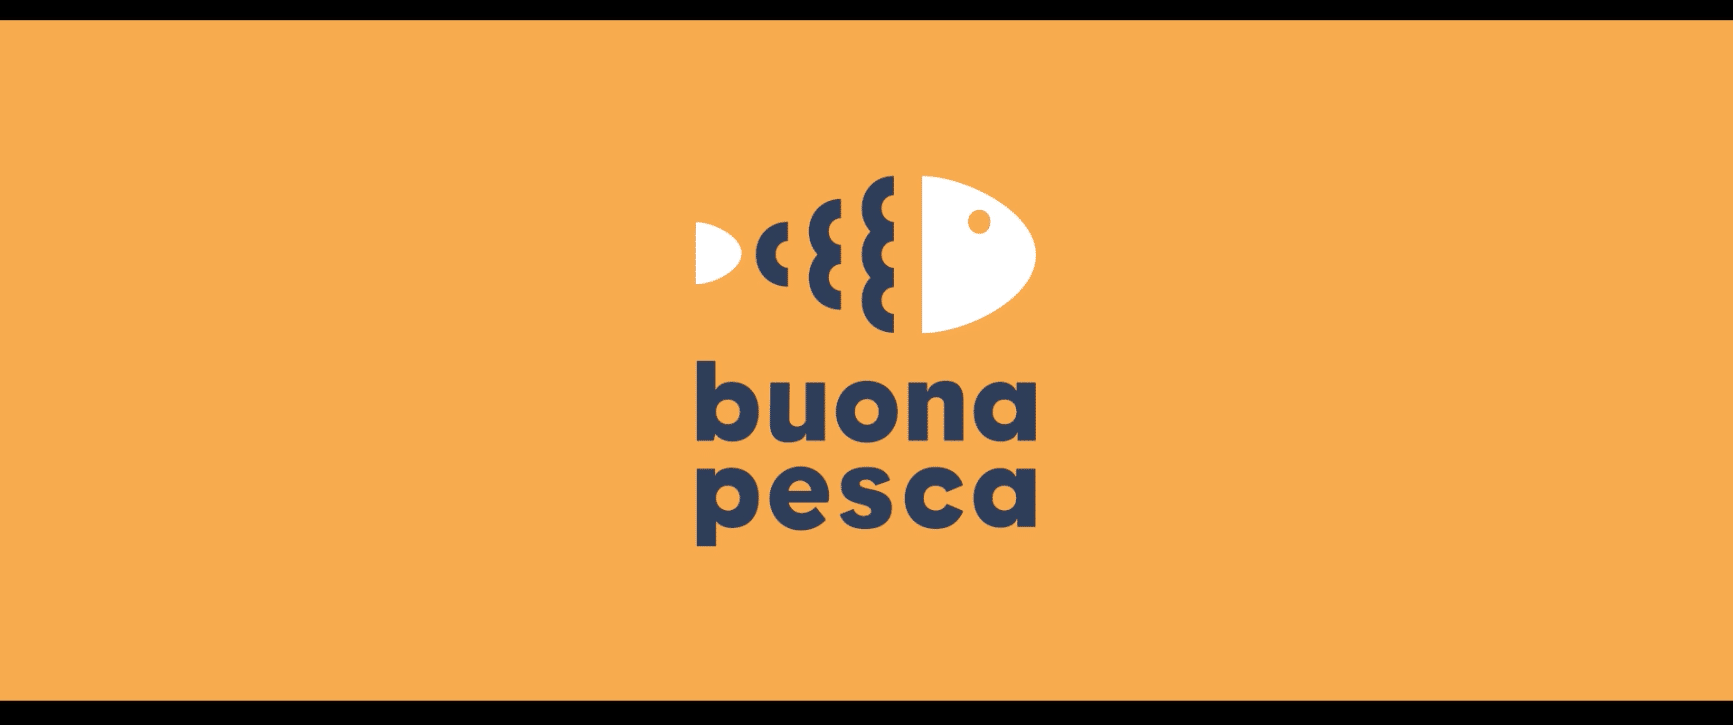 Buona Pesca estreia na TV com campanha “A Espeixealista”